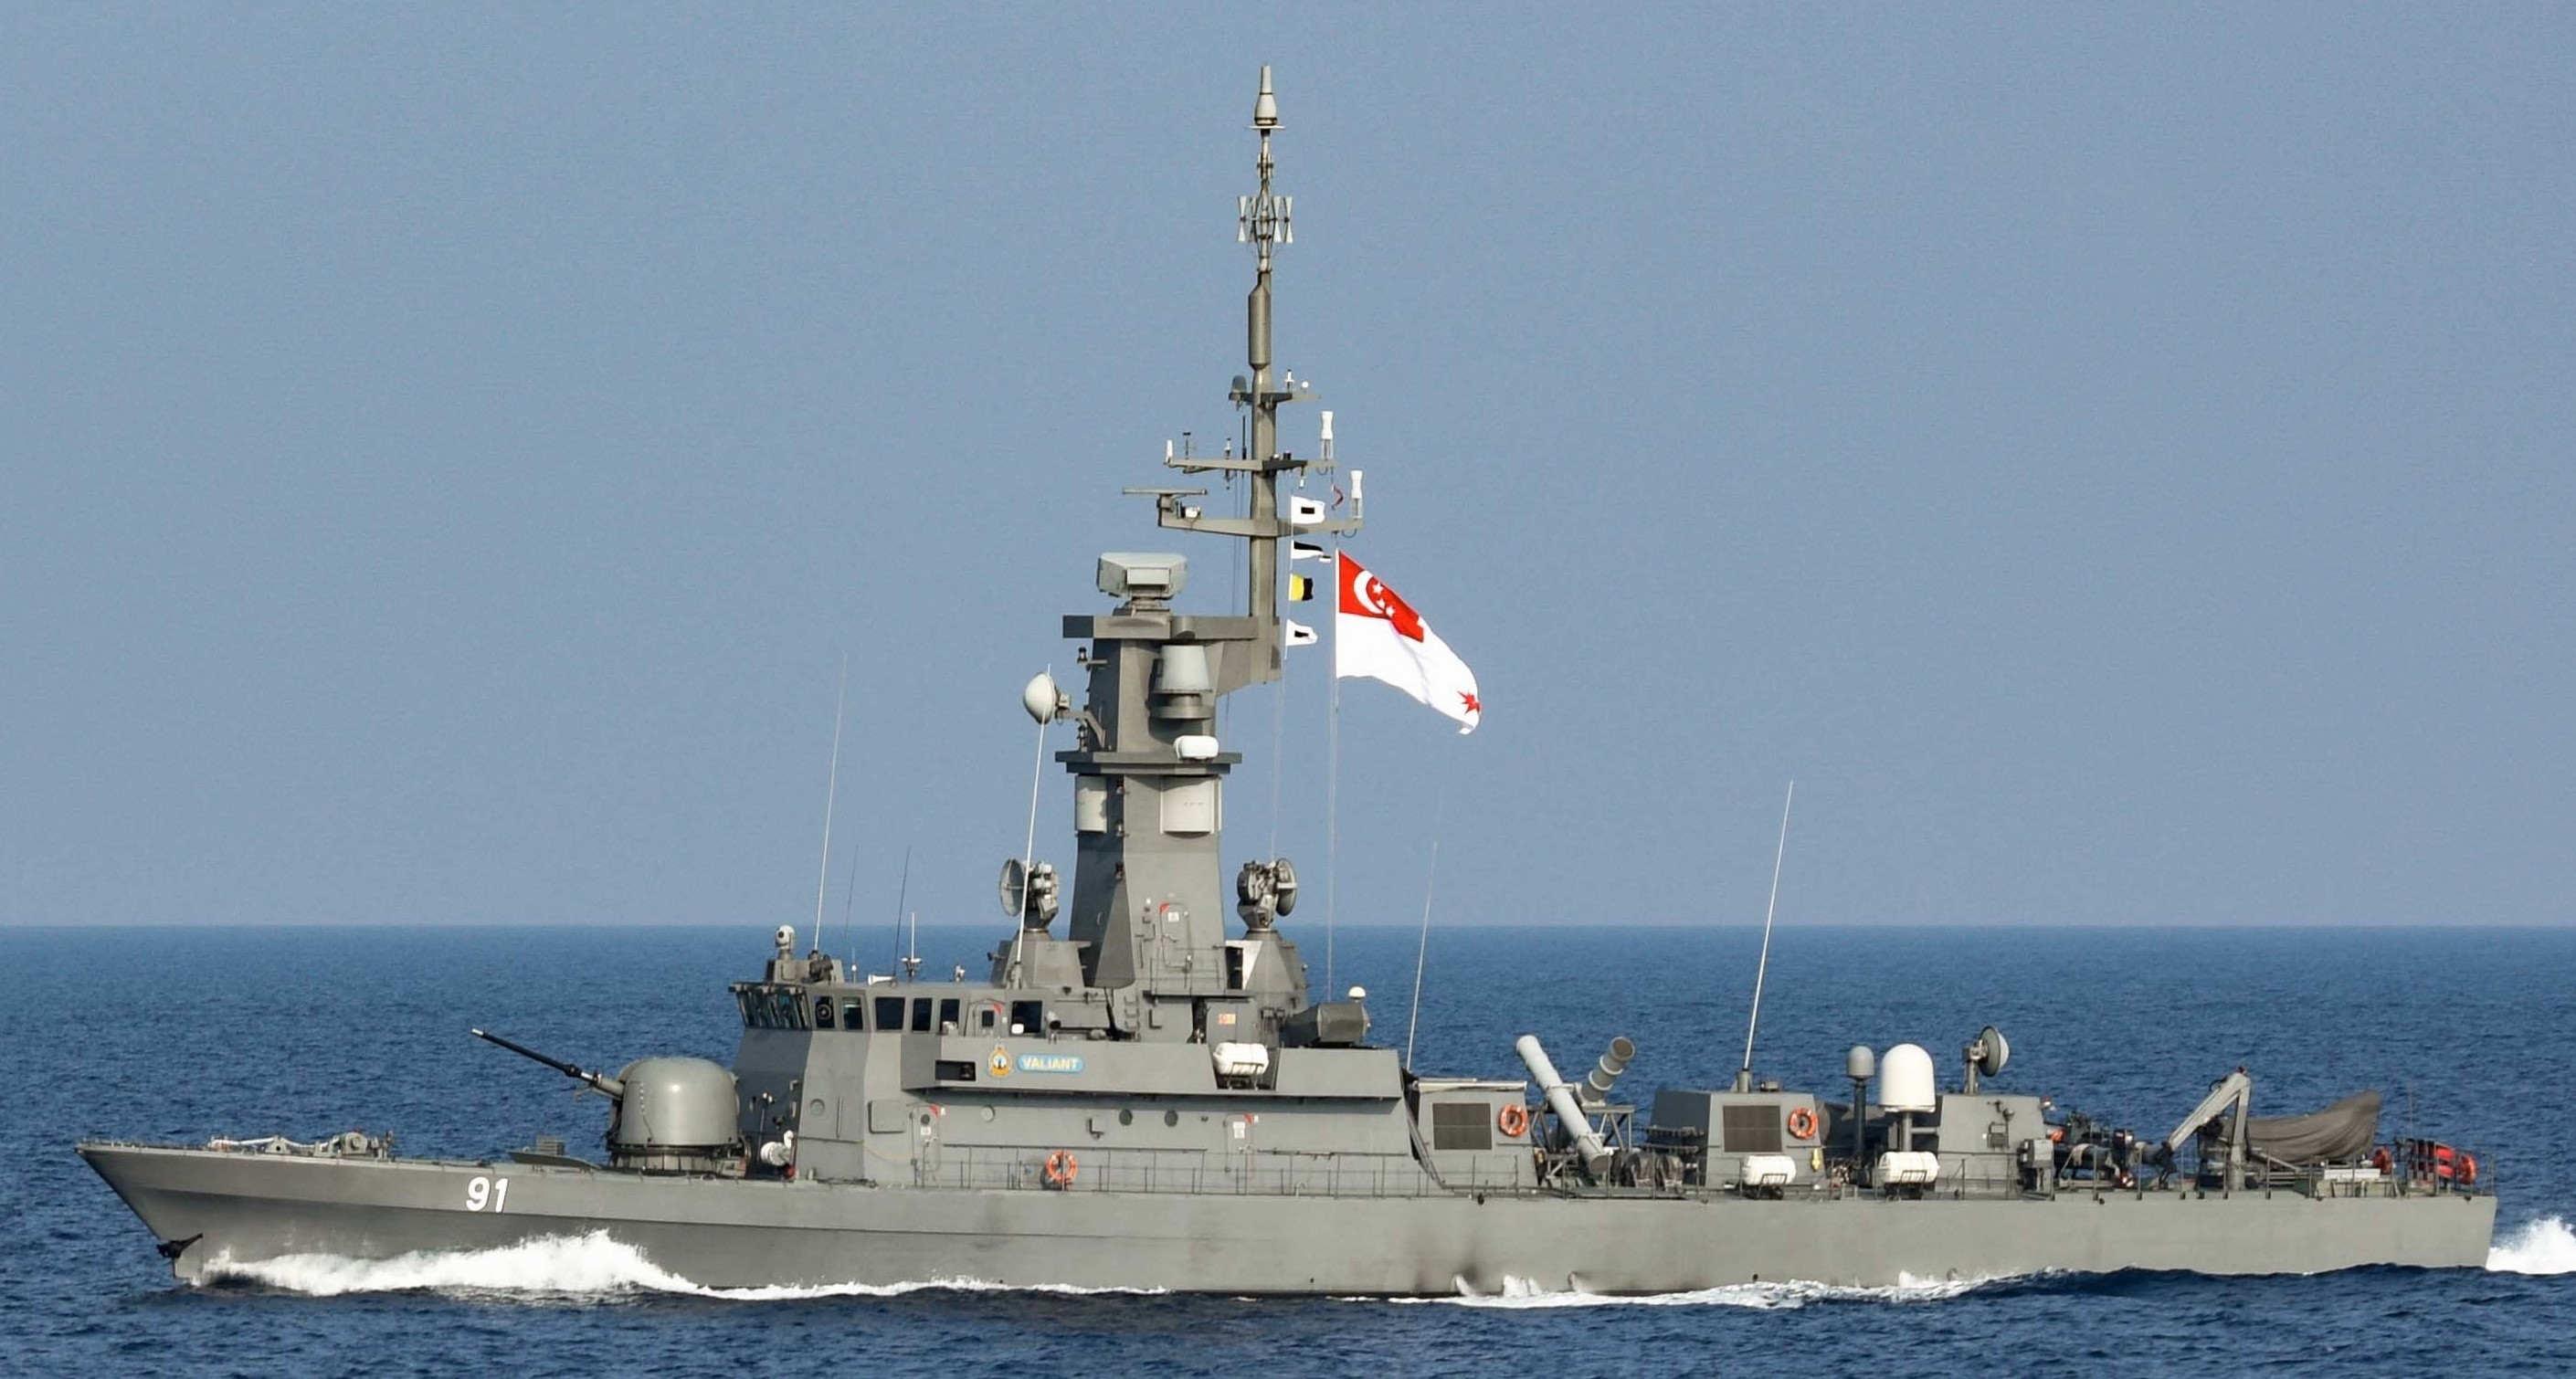 91 rss valiant victory class missile corvette republic singapore navy 14